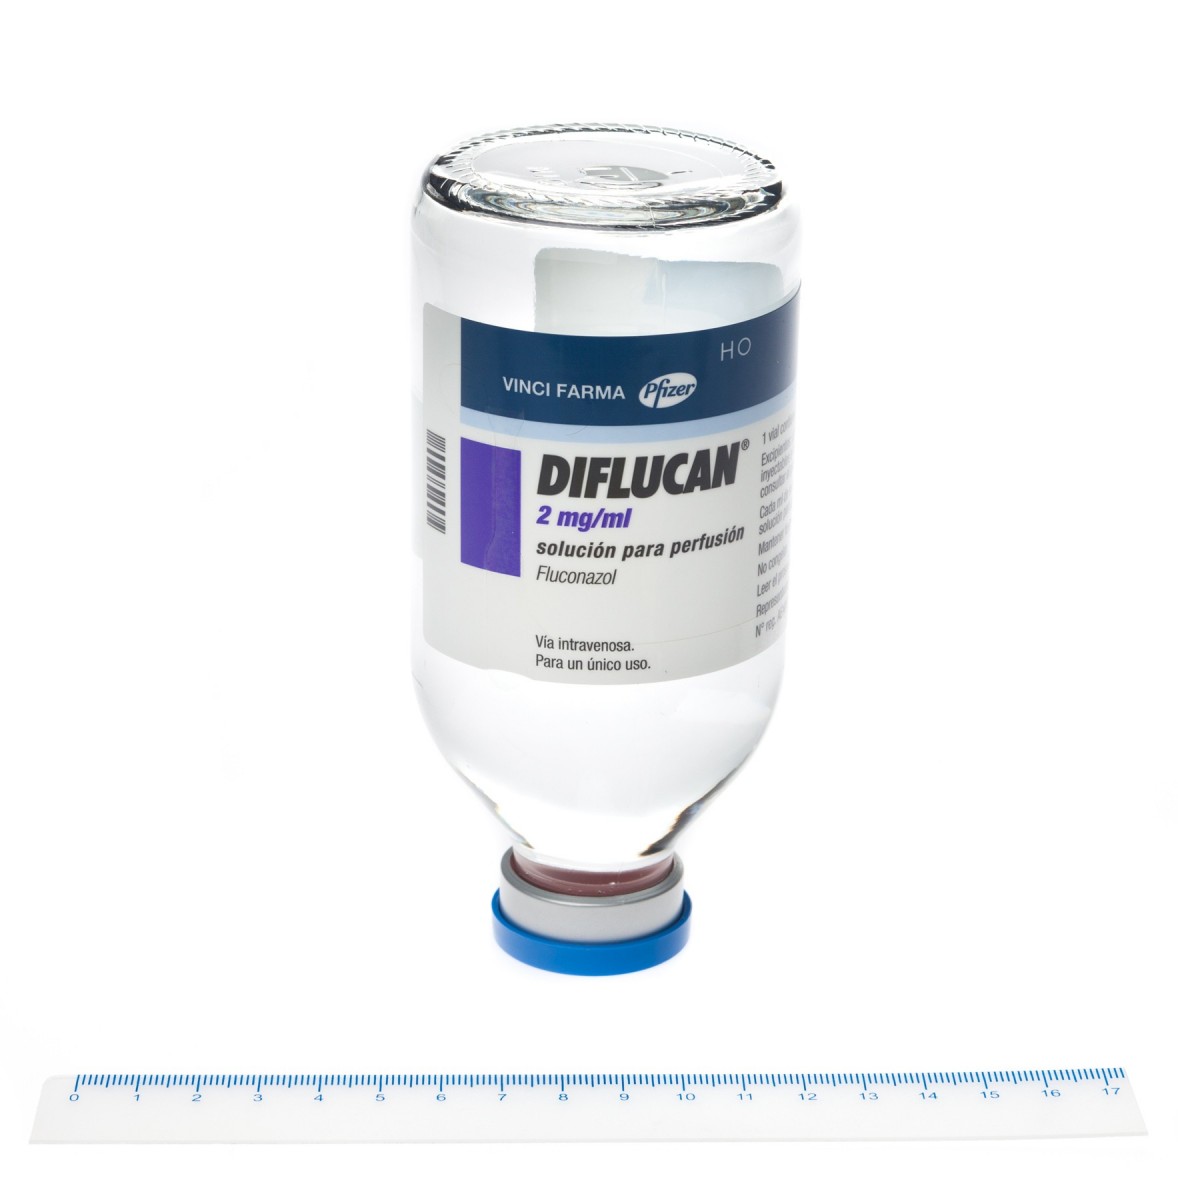 DIFLUCAN 2 mg/ml SOLUCION PARA PERFUSION , 40 viales de 100 ml fotografía de la forma farmacéutica.